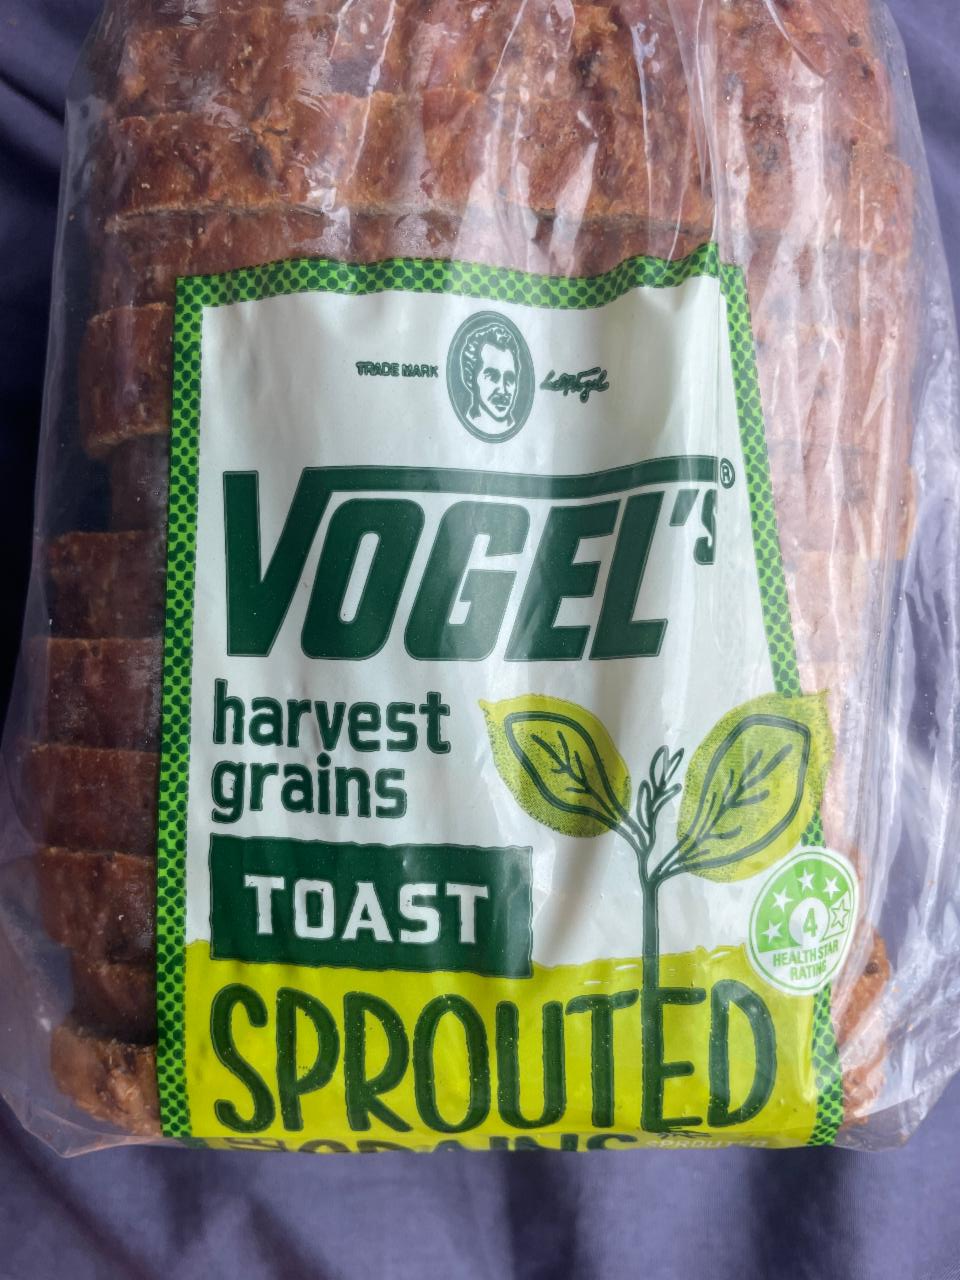 Fotografie - Harvest grains toast sprouted Vogel's